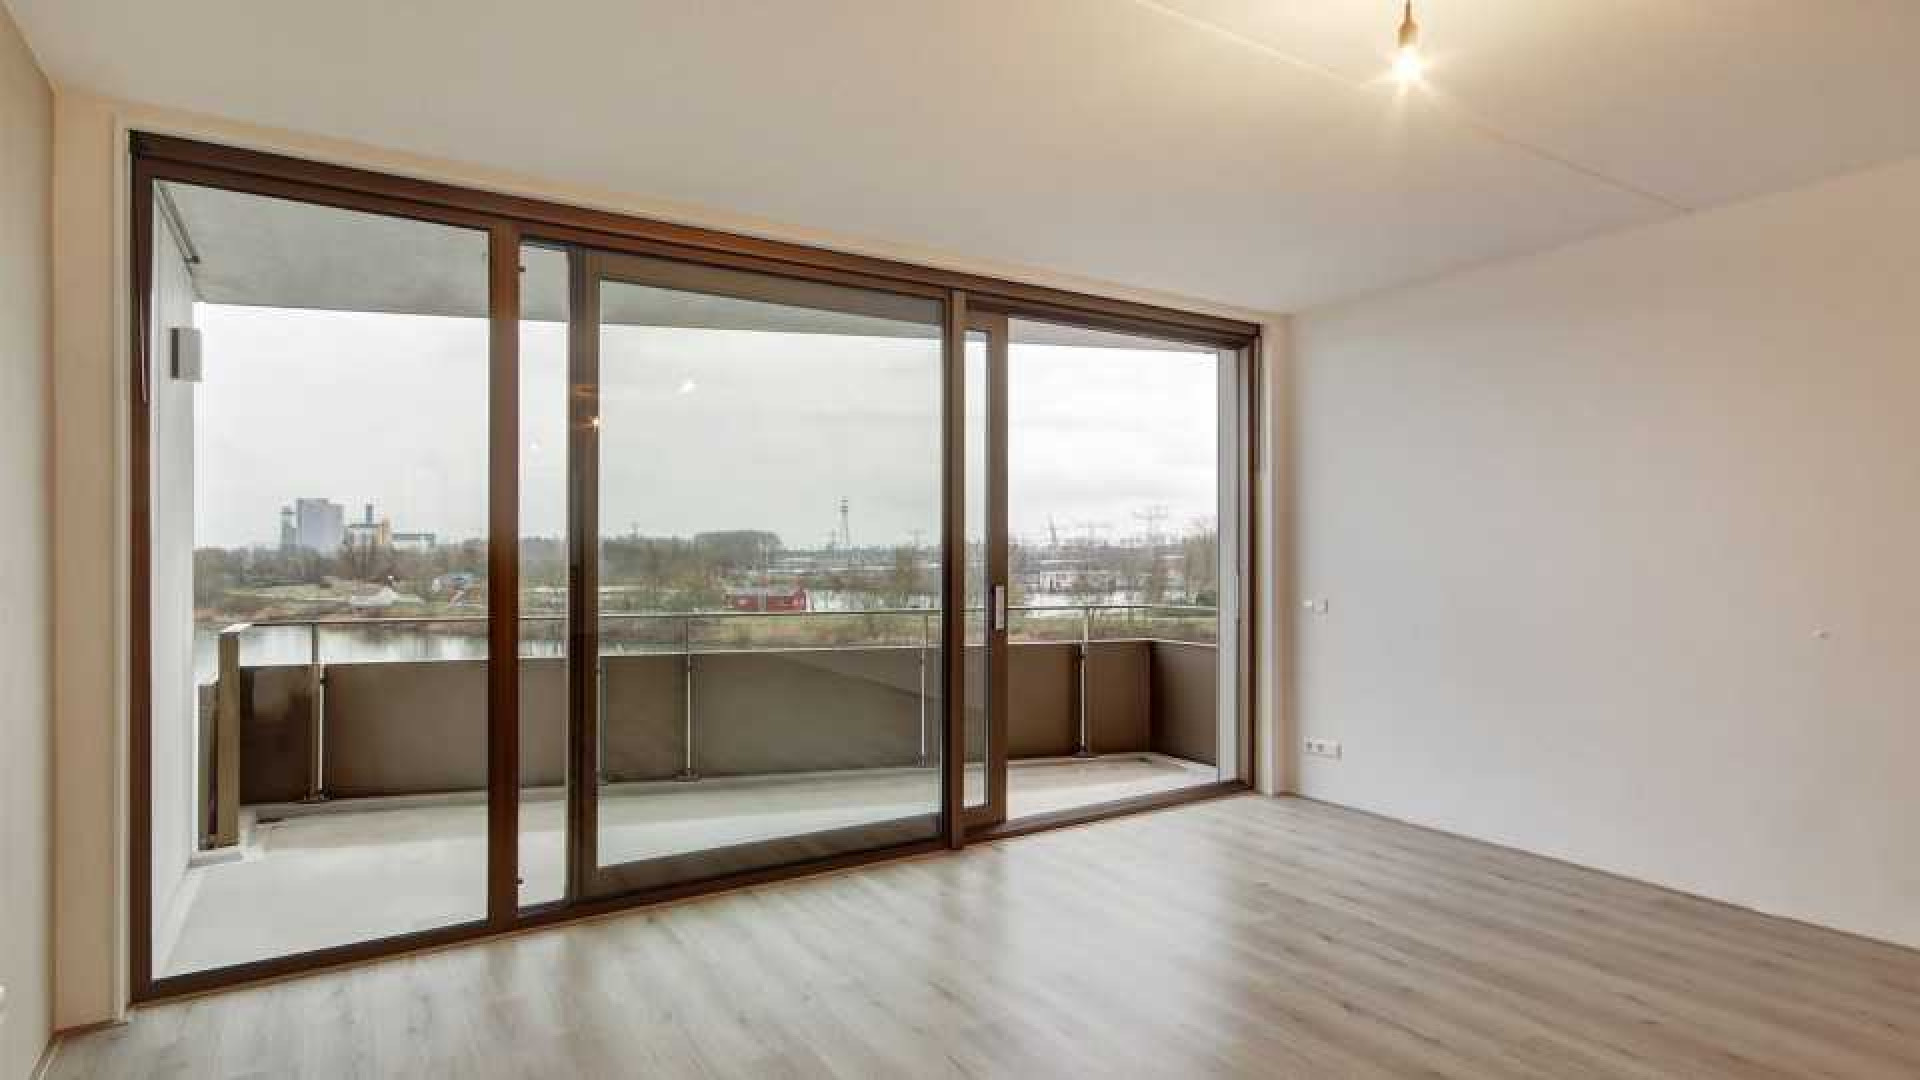 DJ Jean koopt luxe appartement met geweldig uitzicht in IJburg Amsterdam. Zie foto's 9